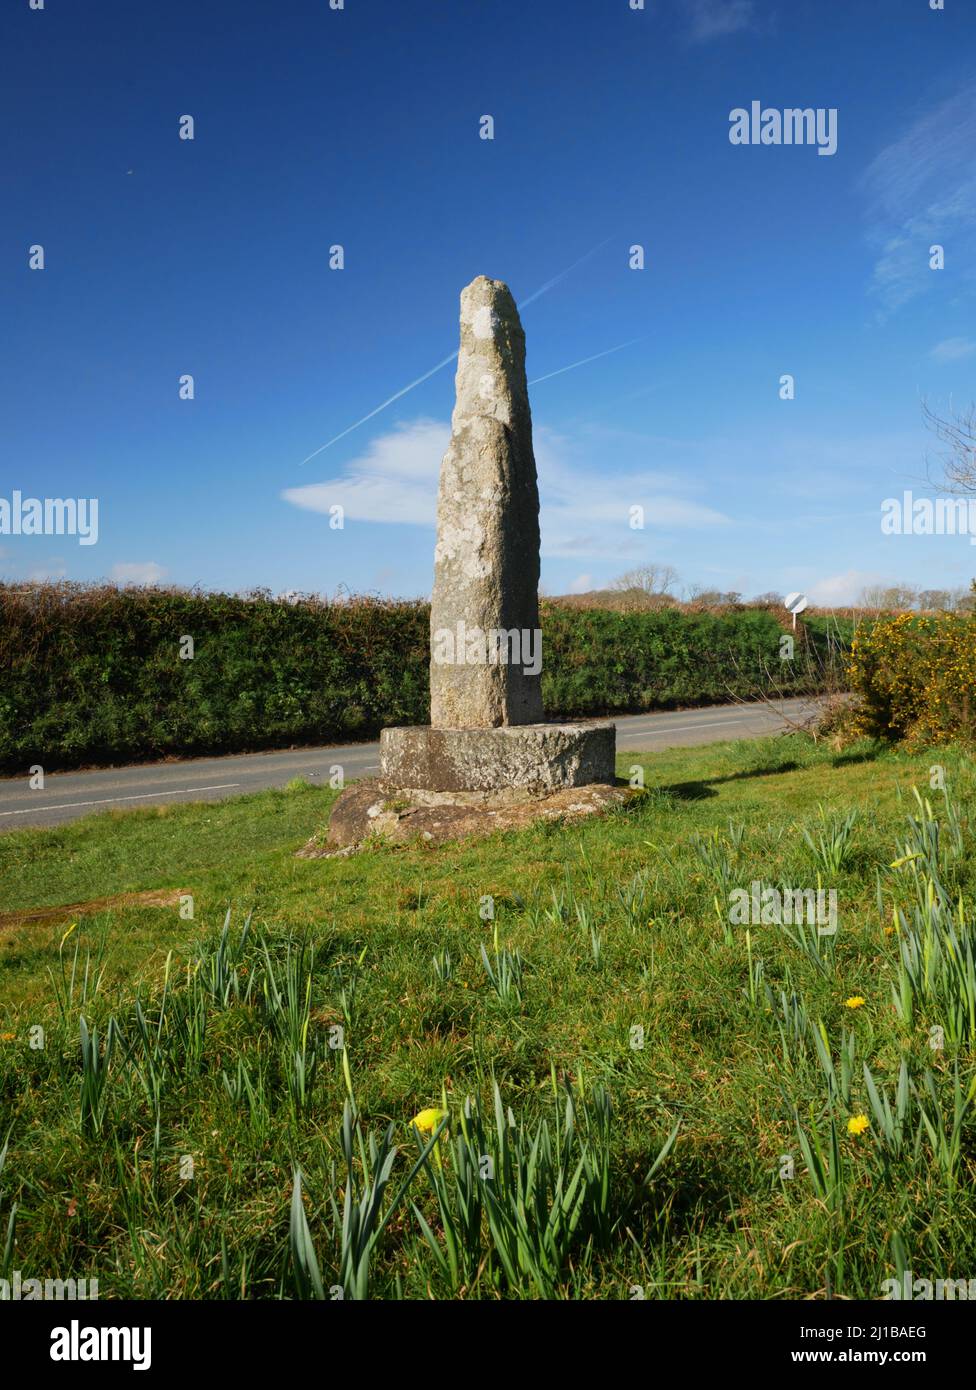 La pietra di Tristan, Fowey, Cornovaglia, la base di un'antica Croce Celtica associata alla leggenda di Tristan e Isola. Foto Stock